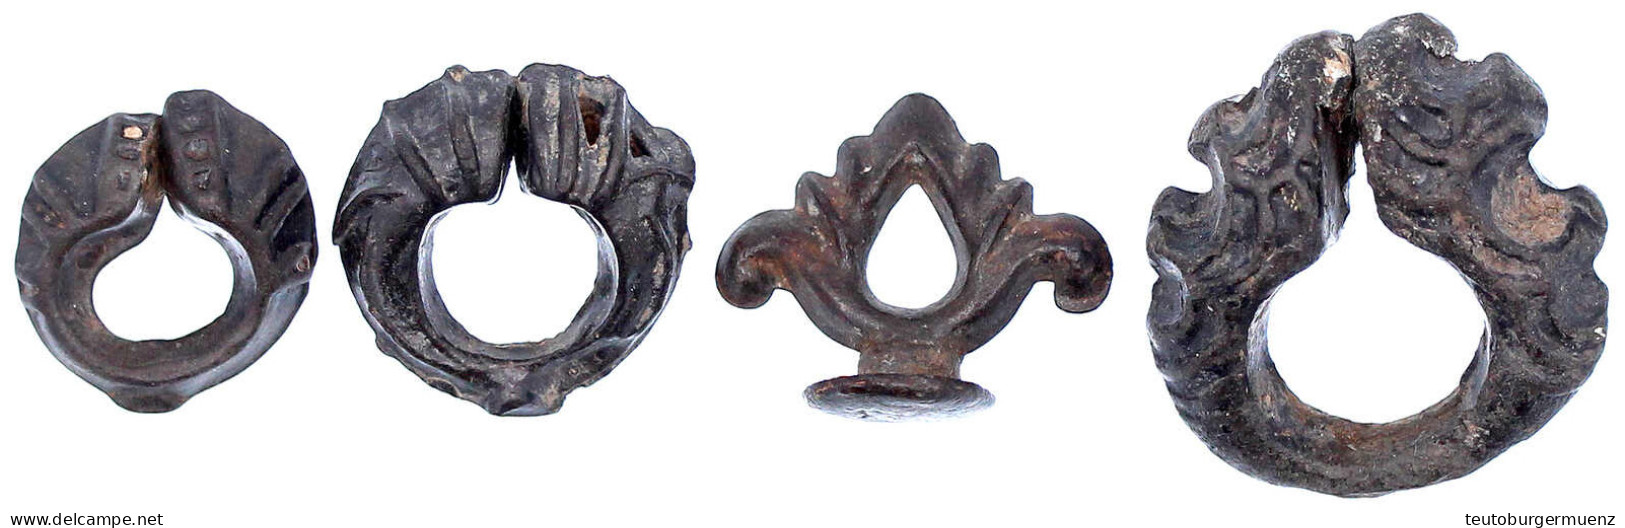 4 Versch. Sogen. "Gambar", Nahezu Ringförmiges Primitivgeld Aus Zinn. Quiggin S. 253-255, Tafel 23,2. Sehr Schön - Indonesien